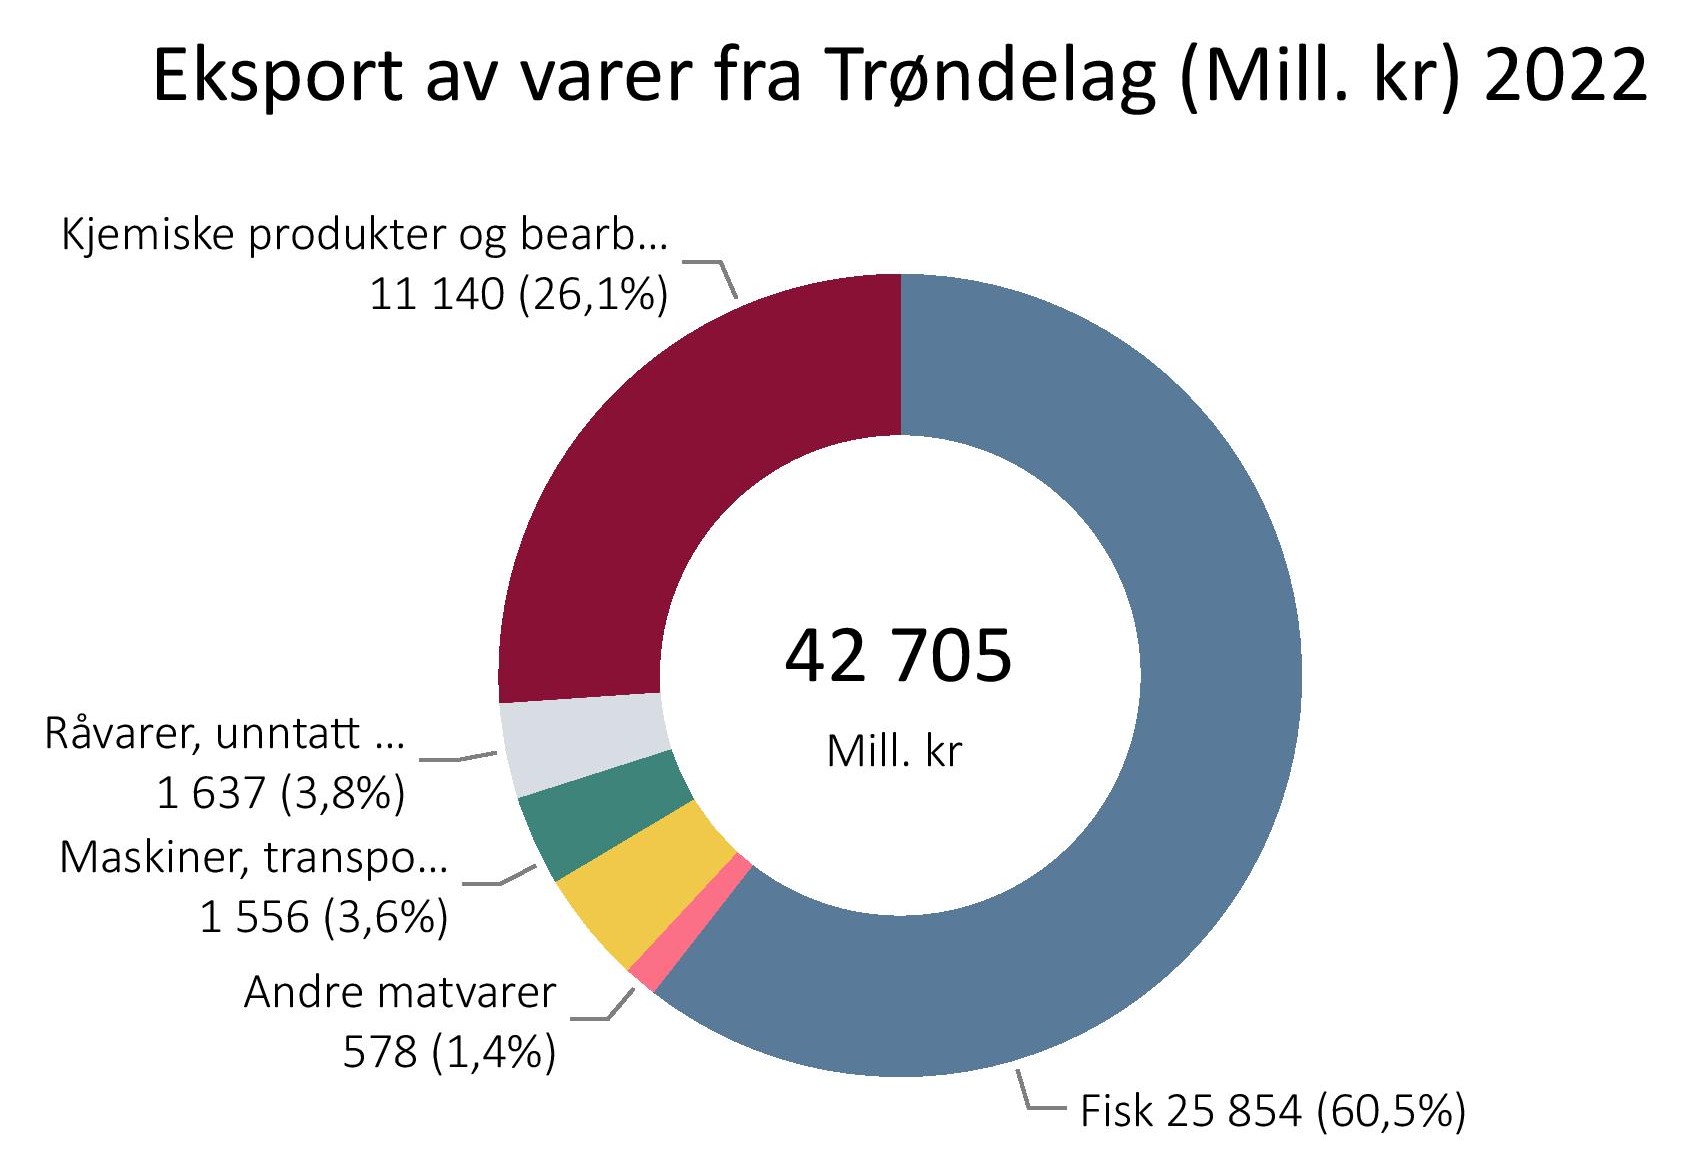 Eksport av varer fra Trøndelag (Mill kr ) i 2022